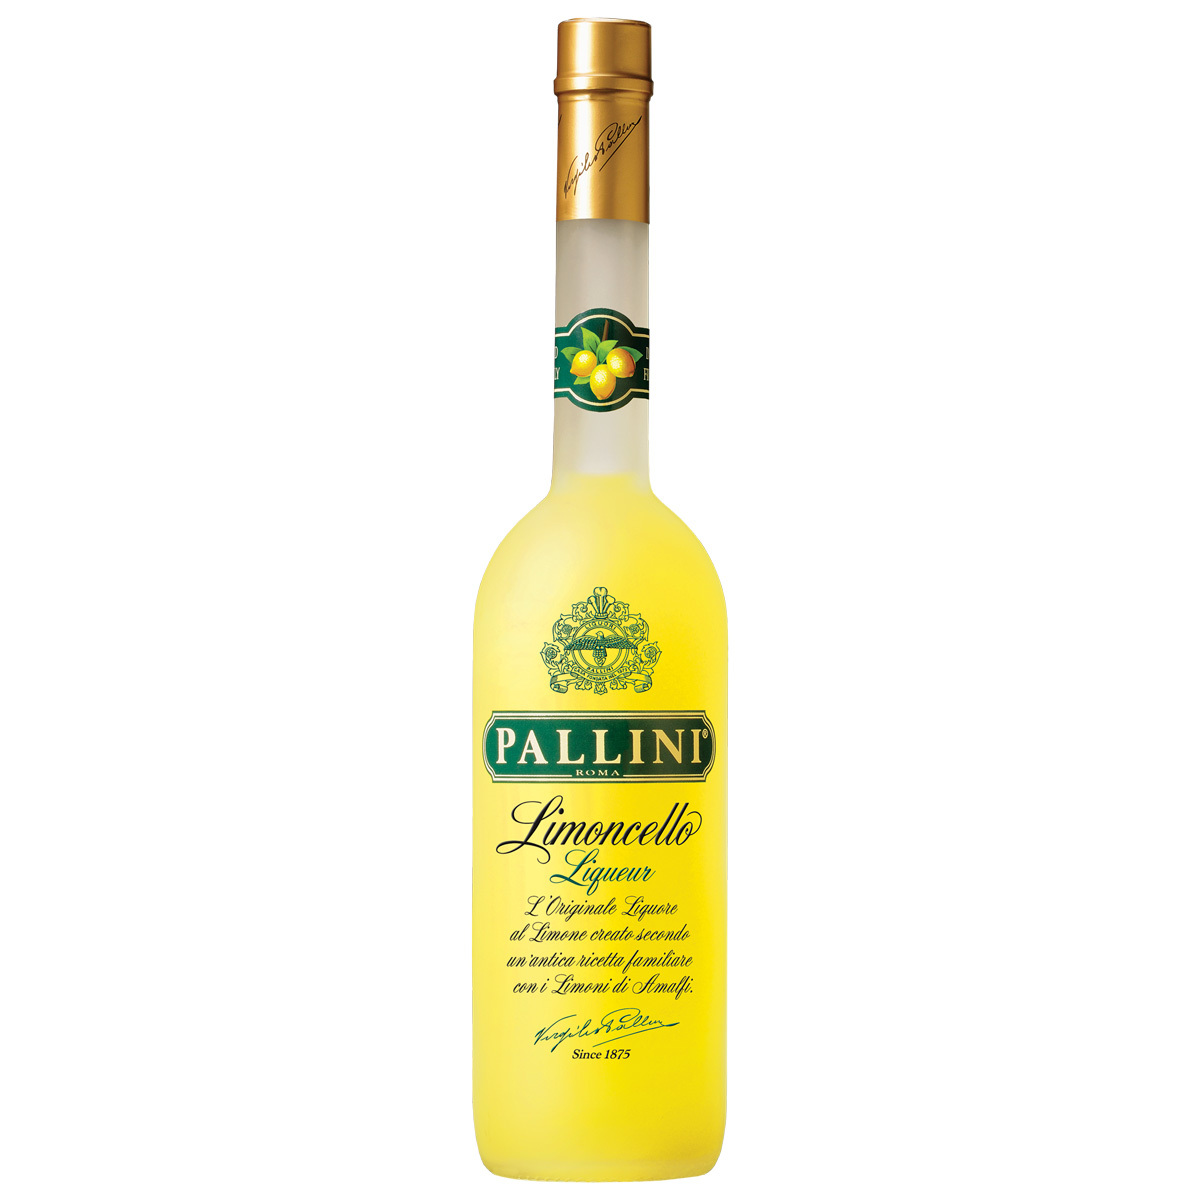 Pallini Limoncello Lemon Liqueur, 1L